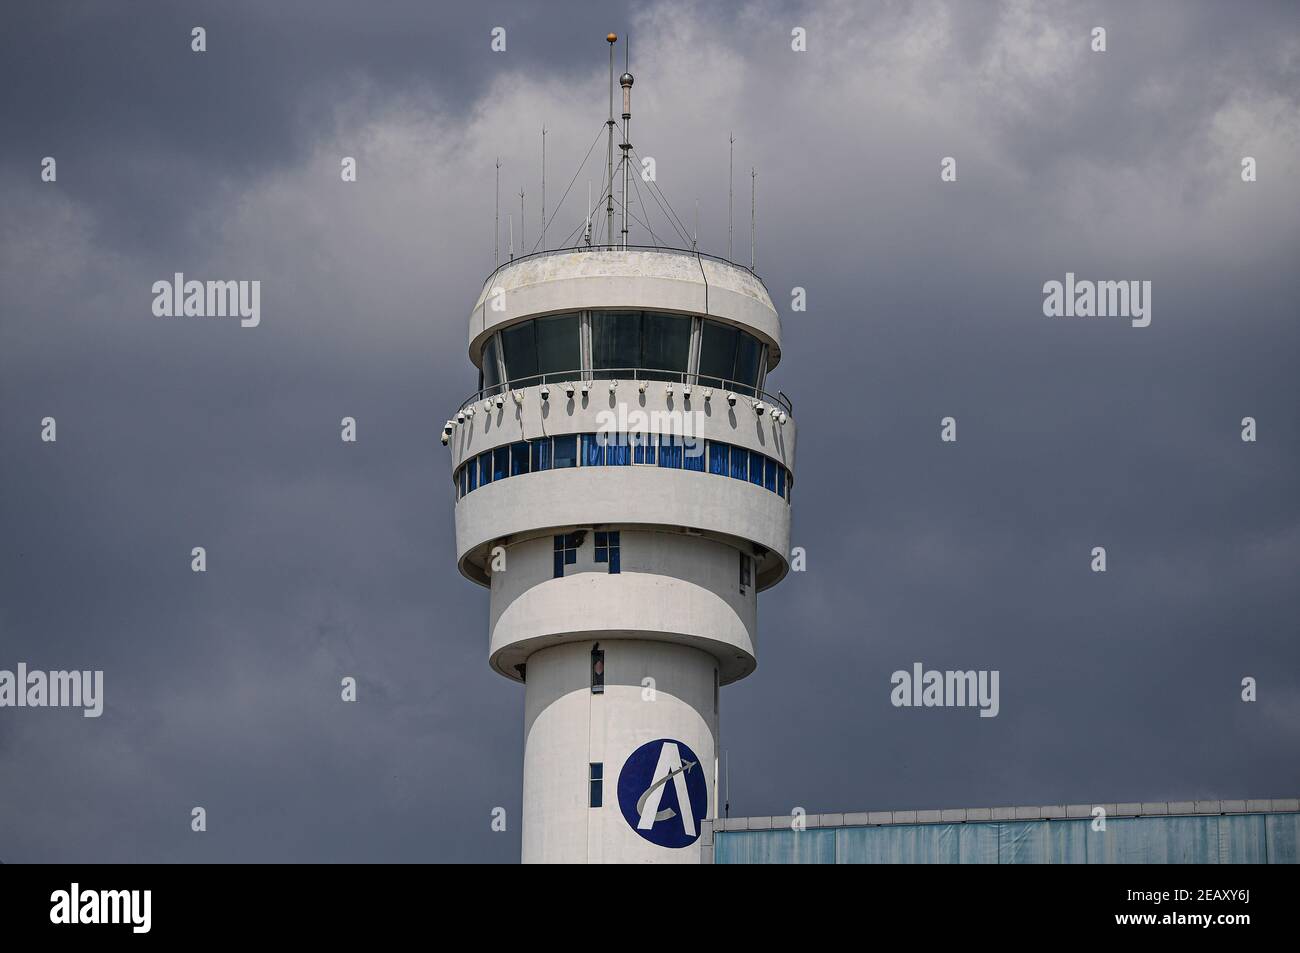 (210211) -- SANYA, le 11 février 2021 (Xinhua) -- le sommet de la tour de contrôle de la circulation aérienne de Sanya, où travaillent les contrôleurs de la circulation aérienne, est photographié à Sanya, dans la province de Hainan, au sud de la Chine, le 28 janvier 2021. Hong Yuan, 29 ans, est un contrôleur de la circulation aérienne à la tour de contrôle de la circulation aérienne de Sanya. En tant que contrôleur de la circulation aérienne, Hong est responsable de la navigation aérienne, du guidage des pilotes pendant le décollage et l'atterrissage et de la surveillance des avions lorsqu'ils voyagent dans le ciel. Ce travail exige une grande attention. Les membres du personnel sont donc censés prendre une pause toutes les deux heures pour se remettre de l'intense WO Banque D'Images